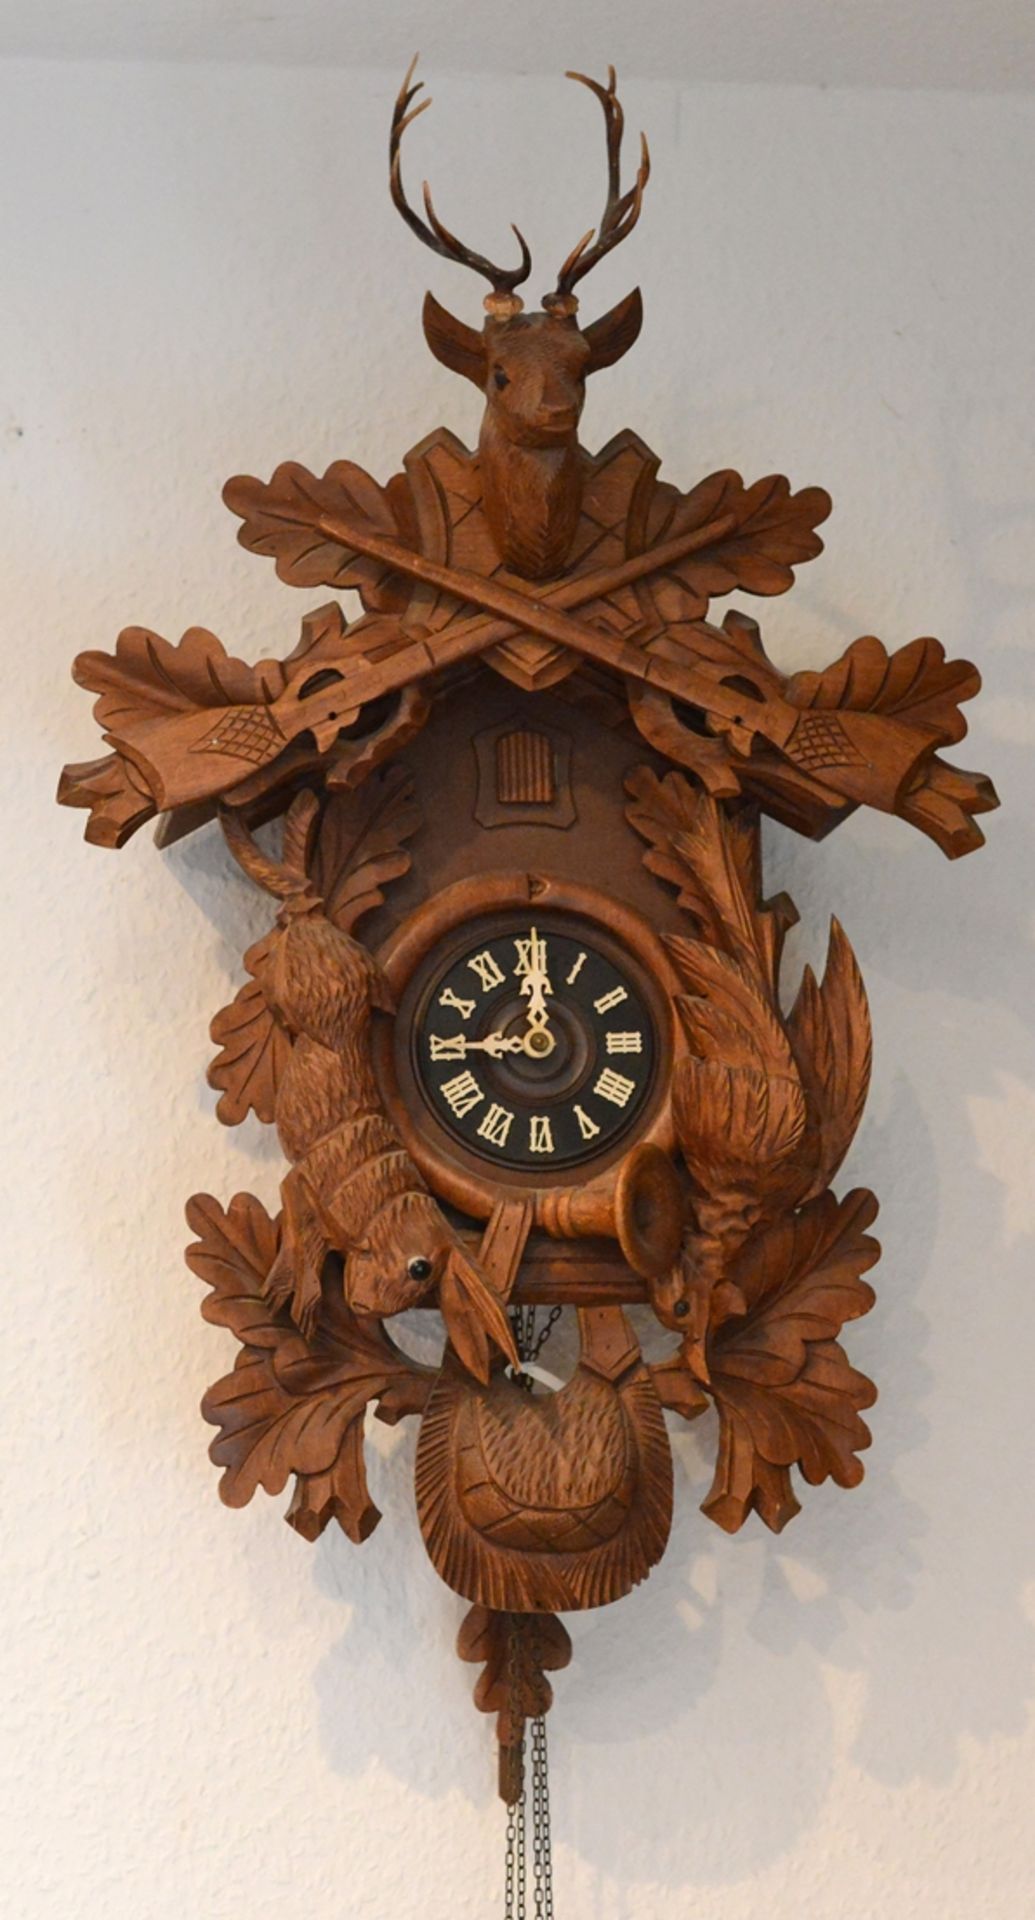 Große Kuckucks-Uhr, mit Jagd-Elementen, bekrönt von Hirschkopf, Holz beschnitzt, Süddeutschland, 20